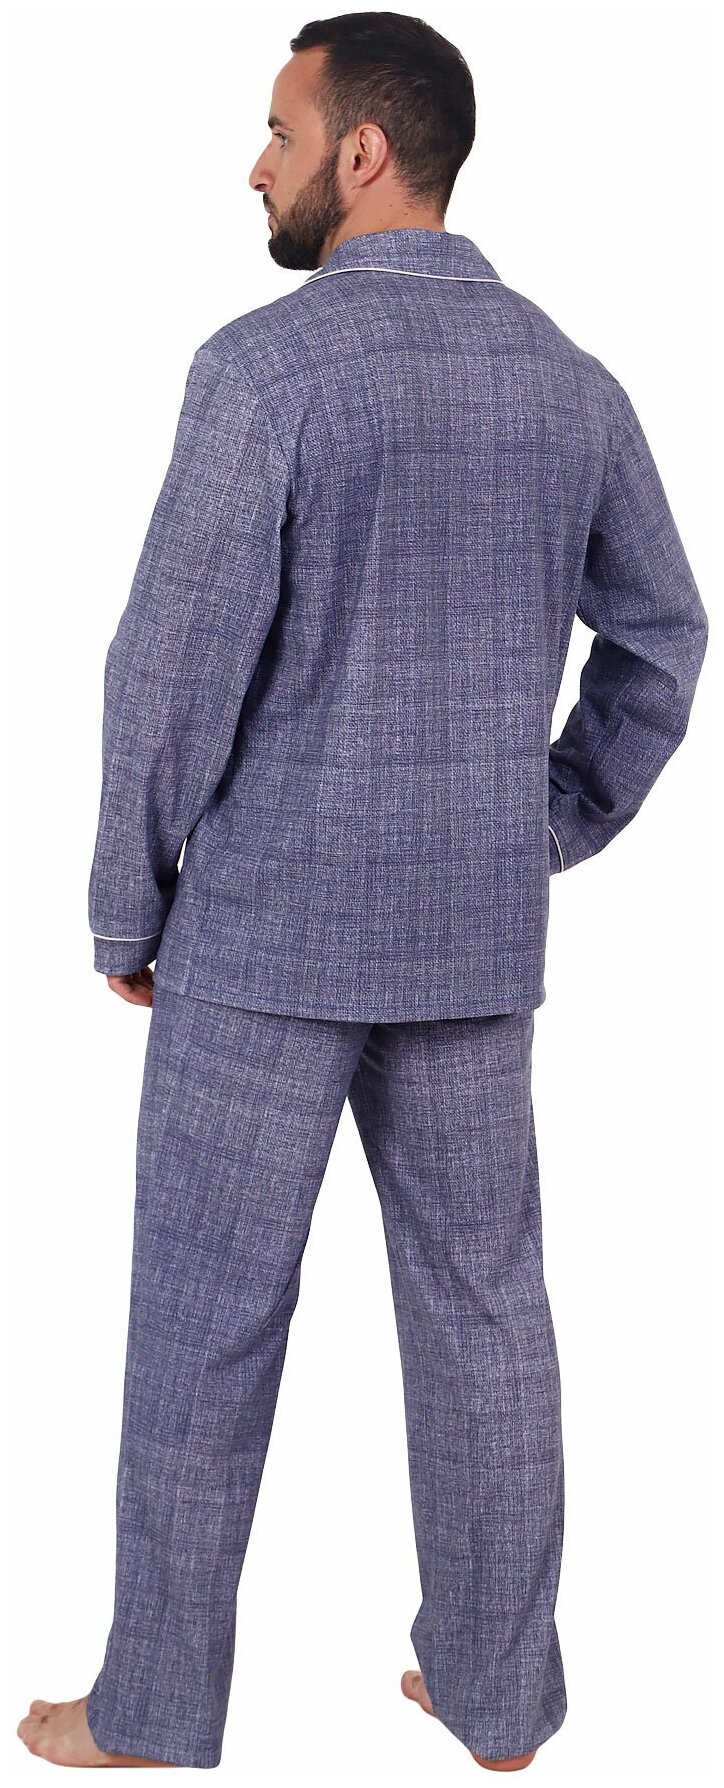 Мужская пижама Вояж Синий размер 56 Кулирка Оптима трикотаж рубашка на пуговицах с отложным воротником брюки с карманами - фотография № 2